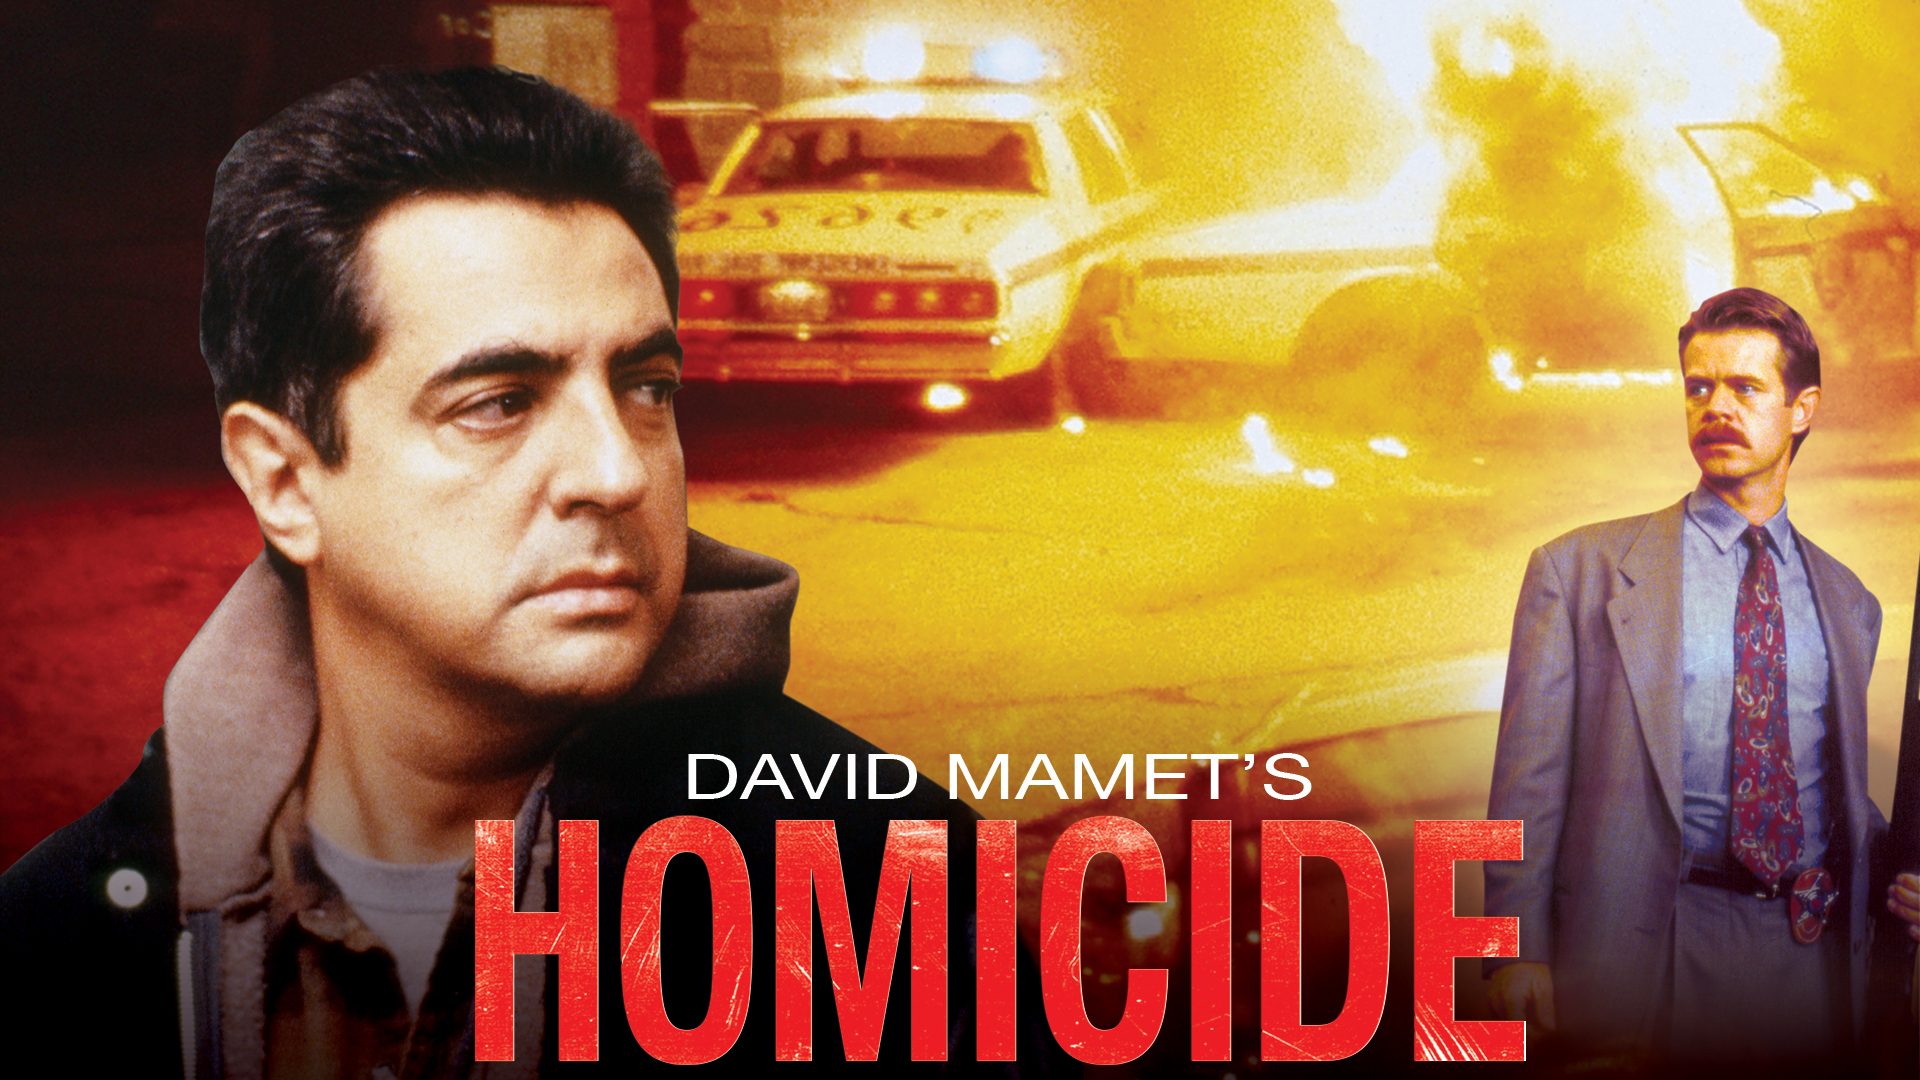 Homicide 1991